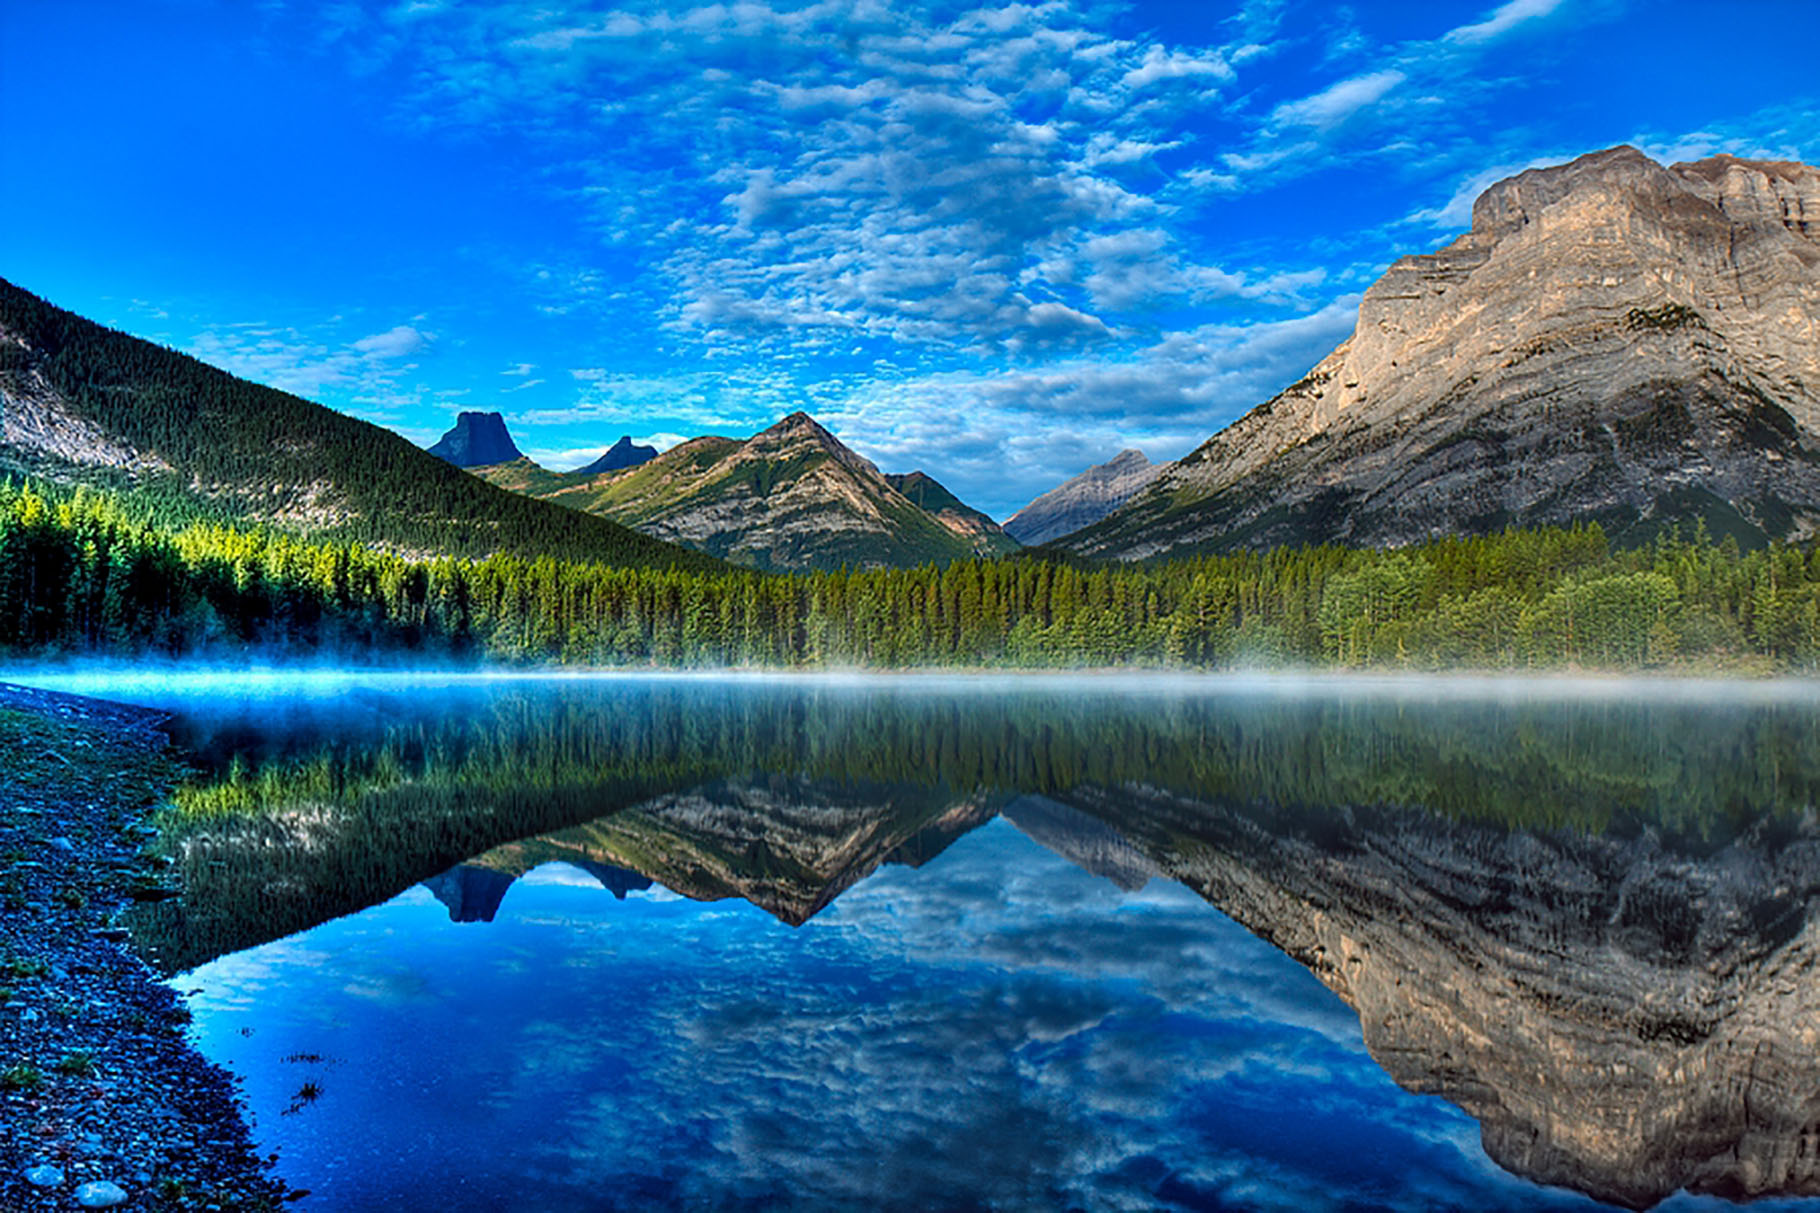 Dans une des provinces canadiennes, l'Alberta, se trouve le pays du Kananaskis. Il s'agit d'un ensemble de parcs principalement destinés au tourisme et aux loisirs, dont l'un est une réserve écologique. Au cœur de ce pays, dont le nom rendrait hommage à un indien d'une des tribus du peuple Cri, s'allonge un lac dénommé&nbsp;Wedge Pond. Littéralement « l'étang du coin ». Un lieu connu pour ses randonnées et autres loisirs d'extérieur, comme le ski de fond ou la luge en hiver.Un sentier de seulement un kilomètre de long, longeant l'étang, explique son histoire grâce à plusieurs pancartes. La première titille la curiosité. Elle raconte&nbsp;que&nbsp;Wedge Pond&nbsp;ne disposait que d'un mètre de profondeur quelques années auparavant&nbsp;mais que cette époque est désormais révolue. Cette faible taille, le laissant geler entièrement l'hiver, et parfois s'assécher en été, ce qui rendait la survie des poissons impossible ne serait plus un problème aujourd'hui. Pourquoi ? La réponse se trouve au Canada !© 2009, Alan et Elaine&nbsp;Wilson